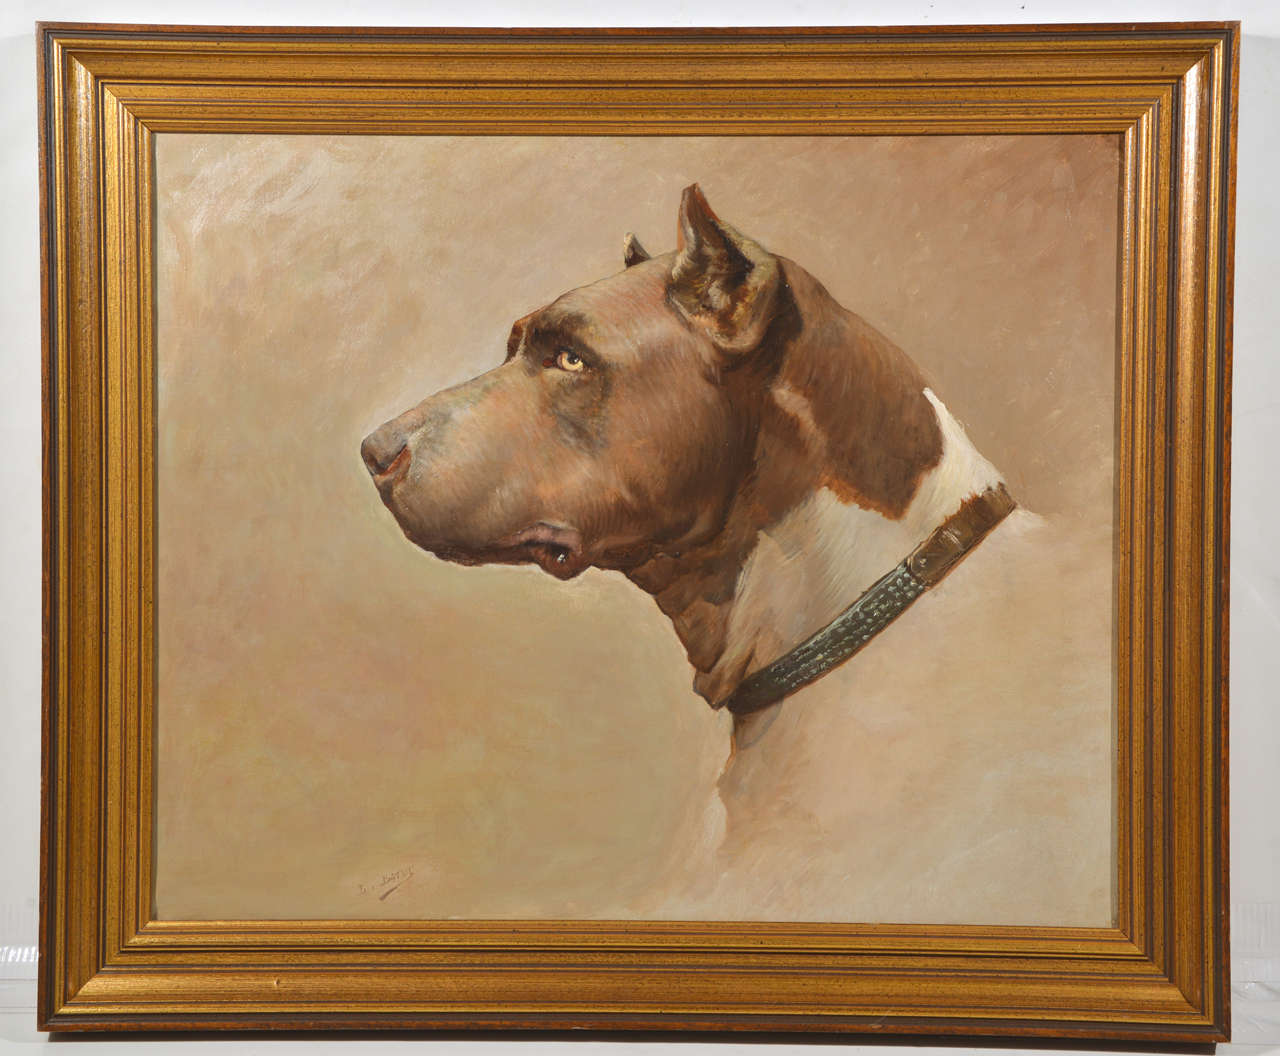 Framed oil on canvas painting of a dog side portrait, signed L. Batut